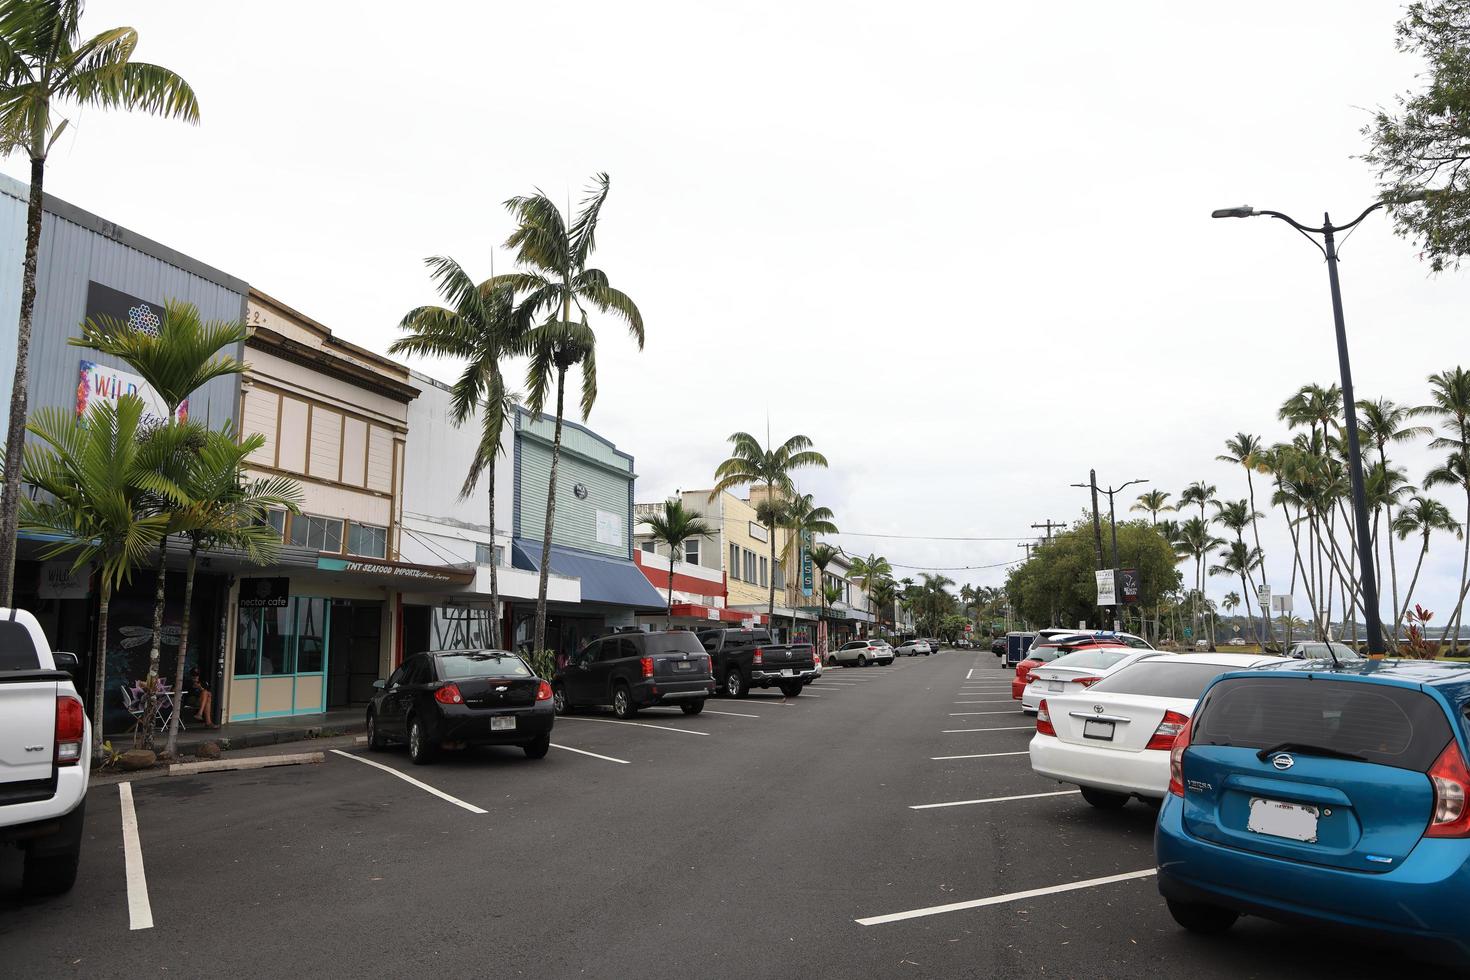 hilo, havaí, eua, 2021 - vista de um estacionamento na cidade foto